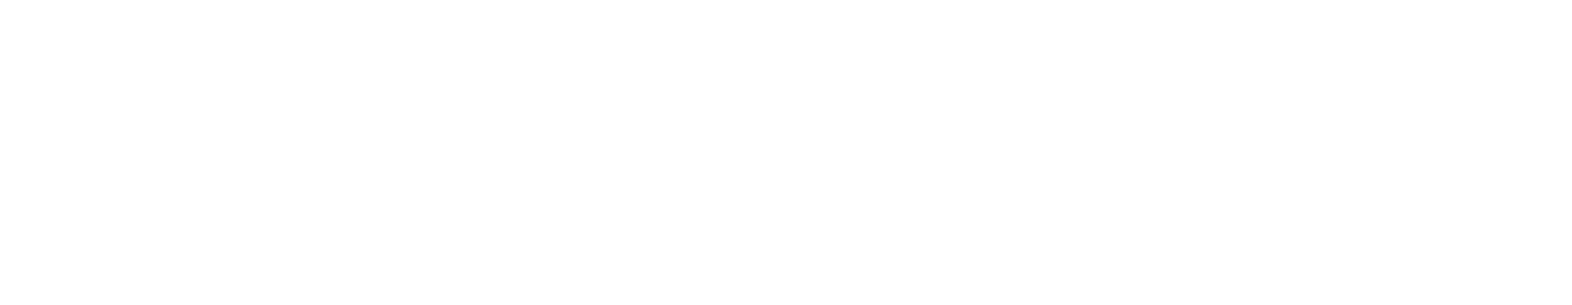 SigmaTron International logo large for dark backgrounds (transparent PNG)